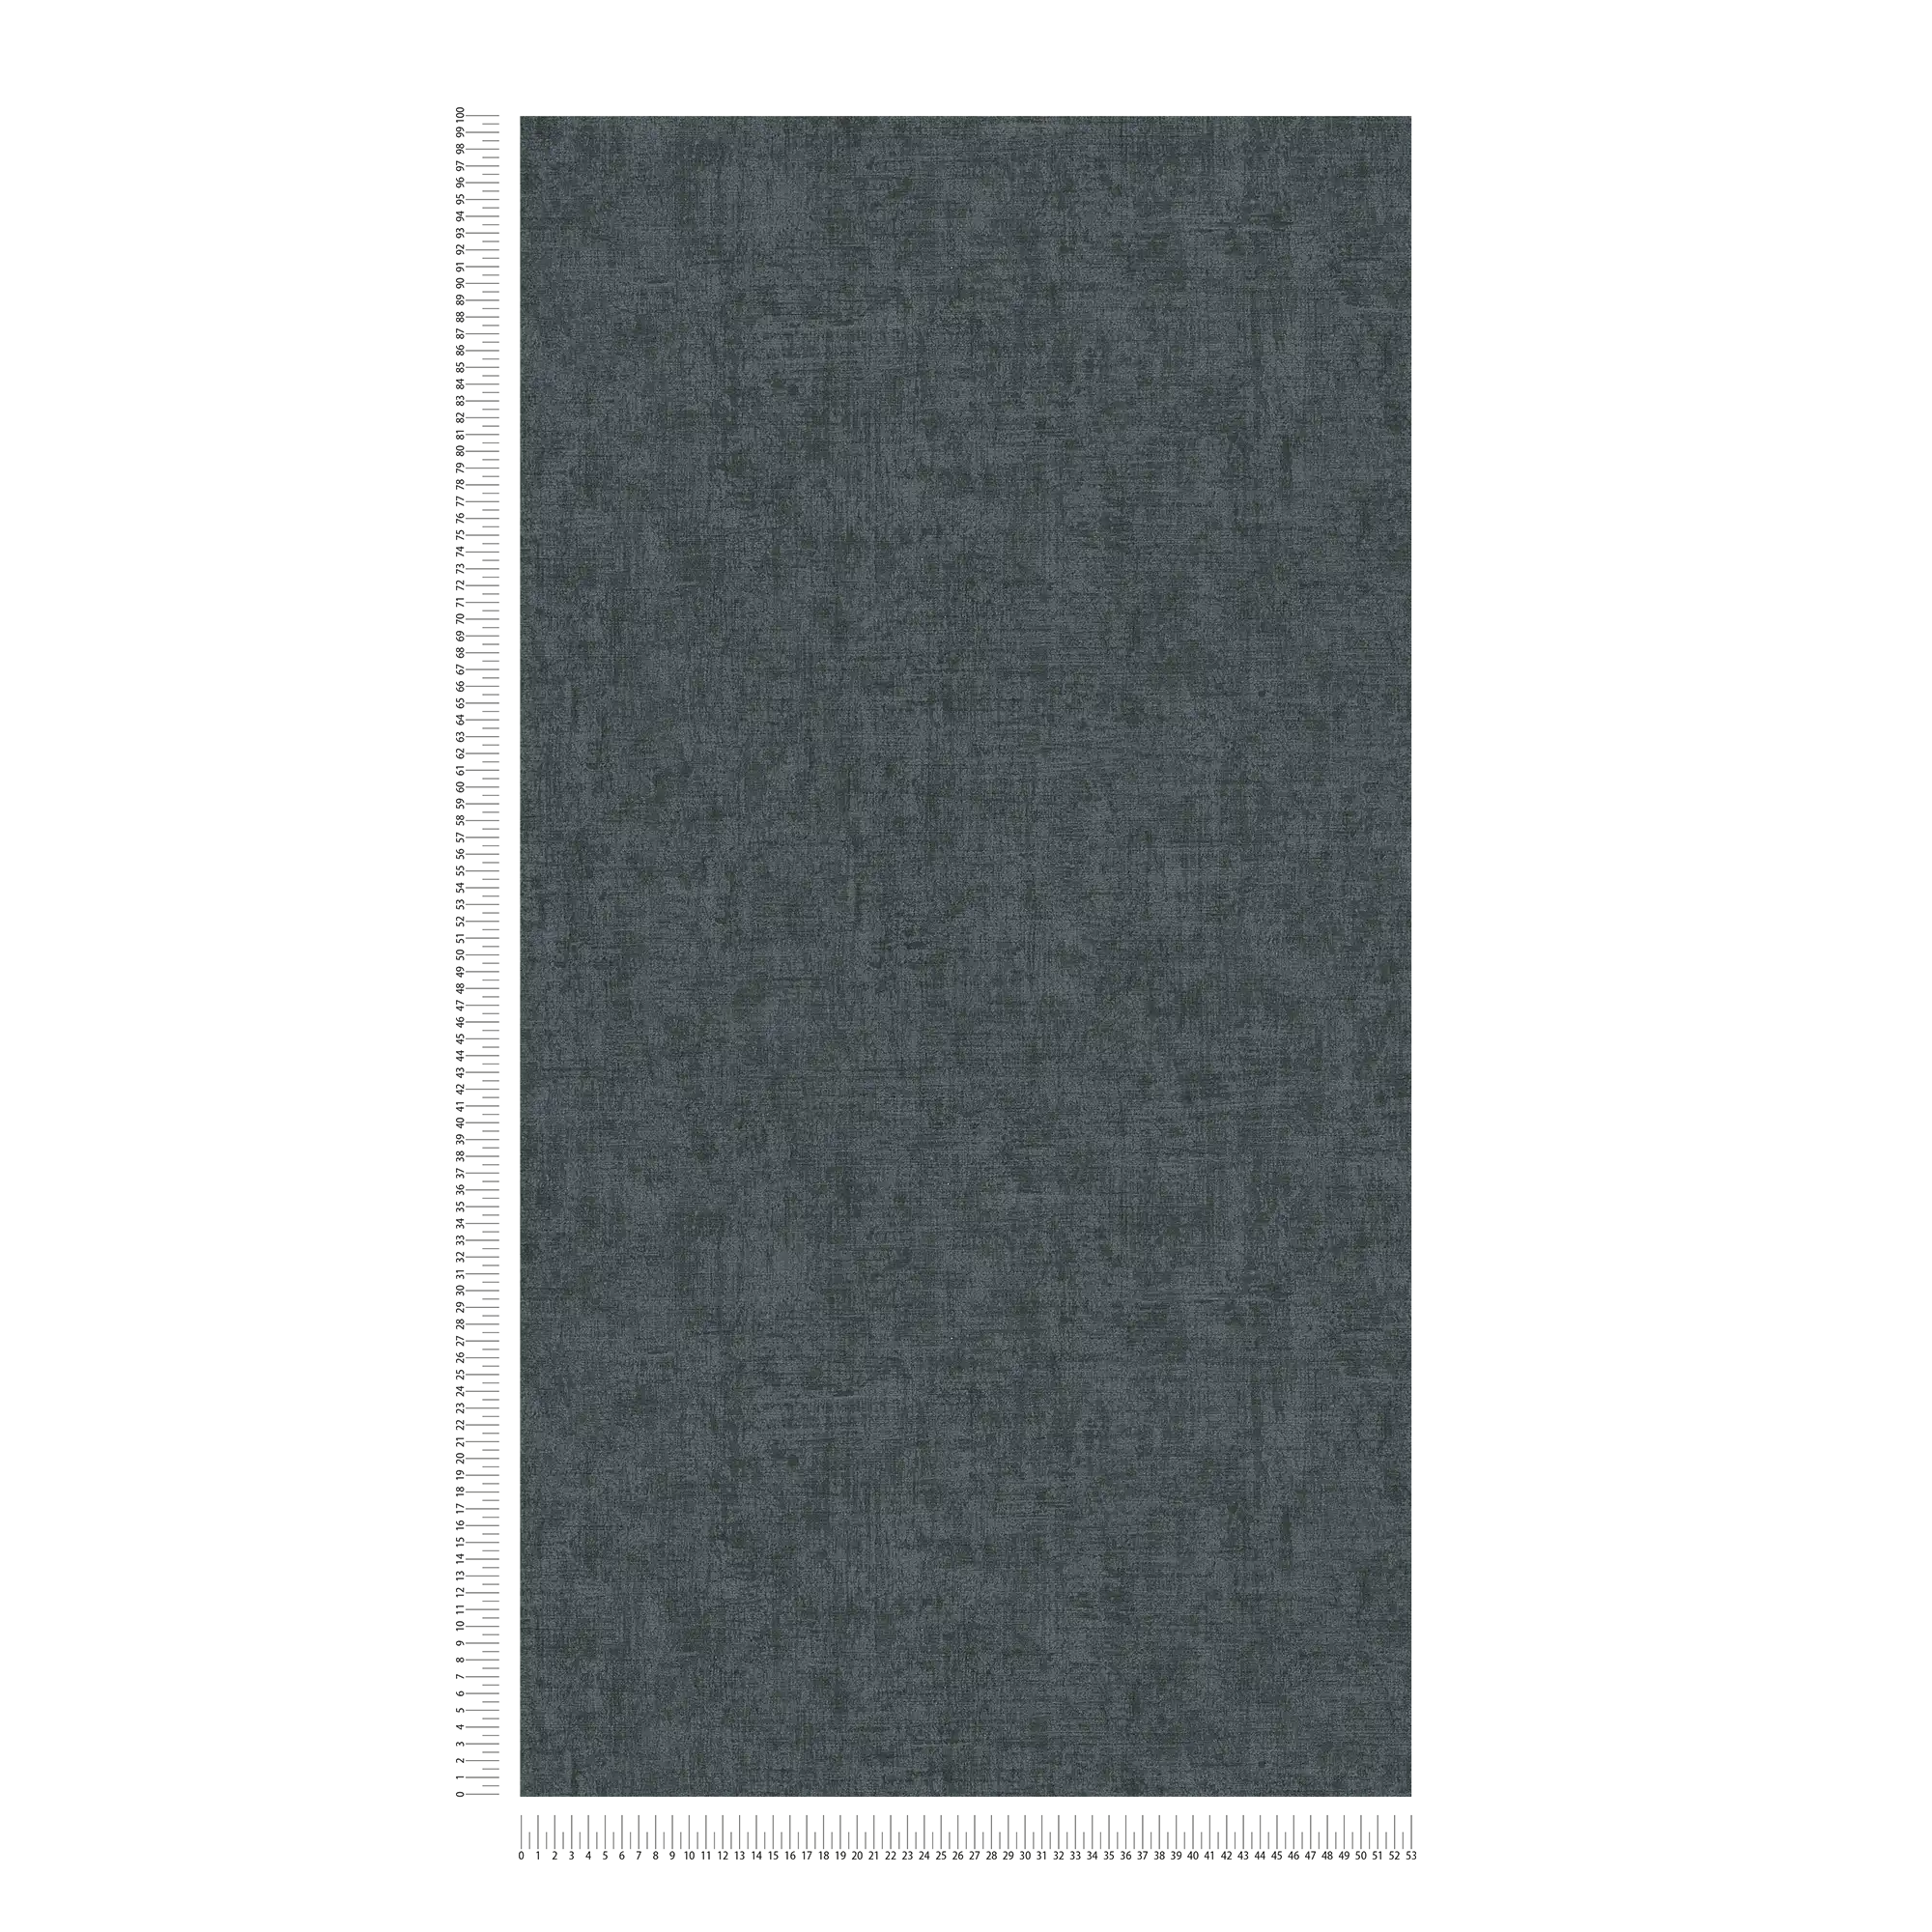             Dunkle Tapete mit Farb- und Strukturmuster – Grau, Schwarz
        